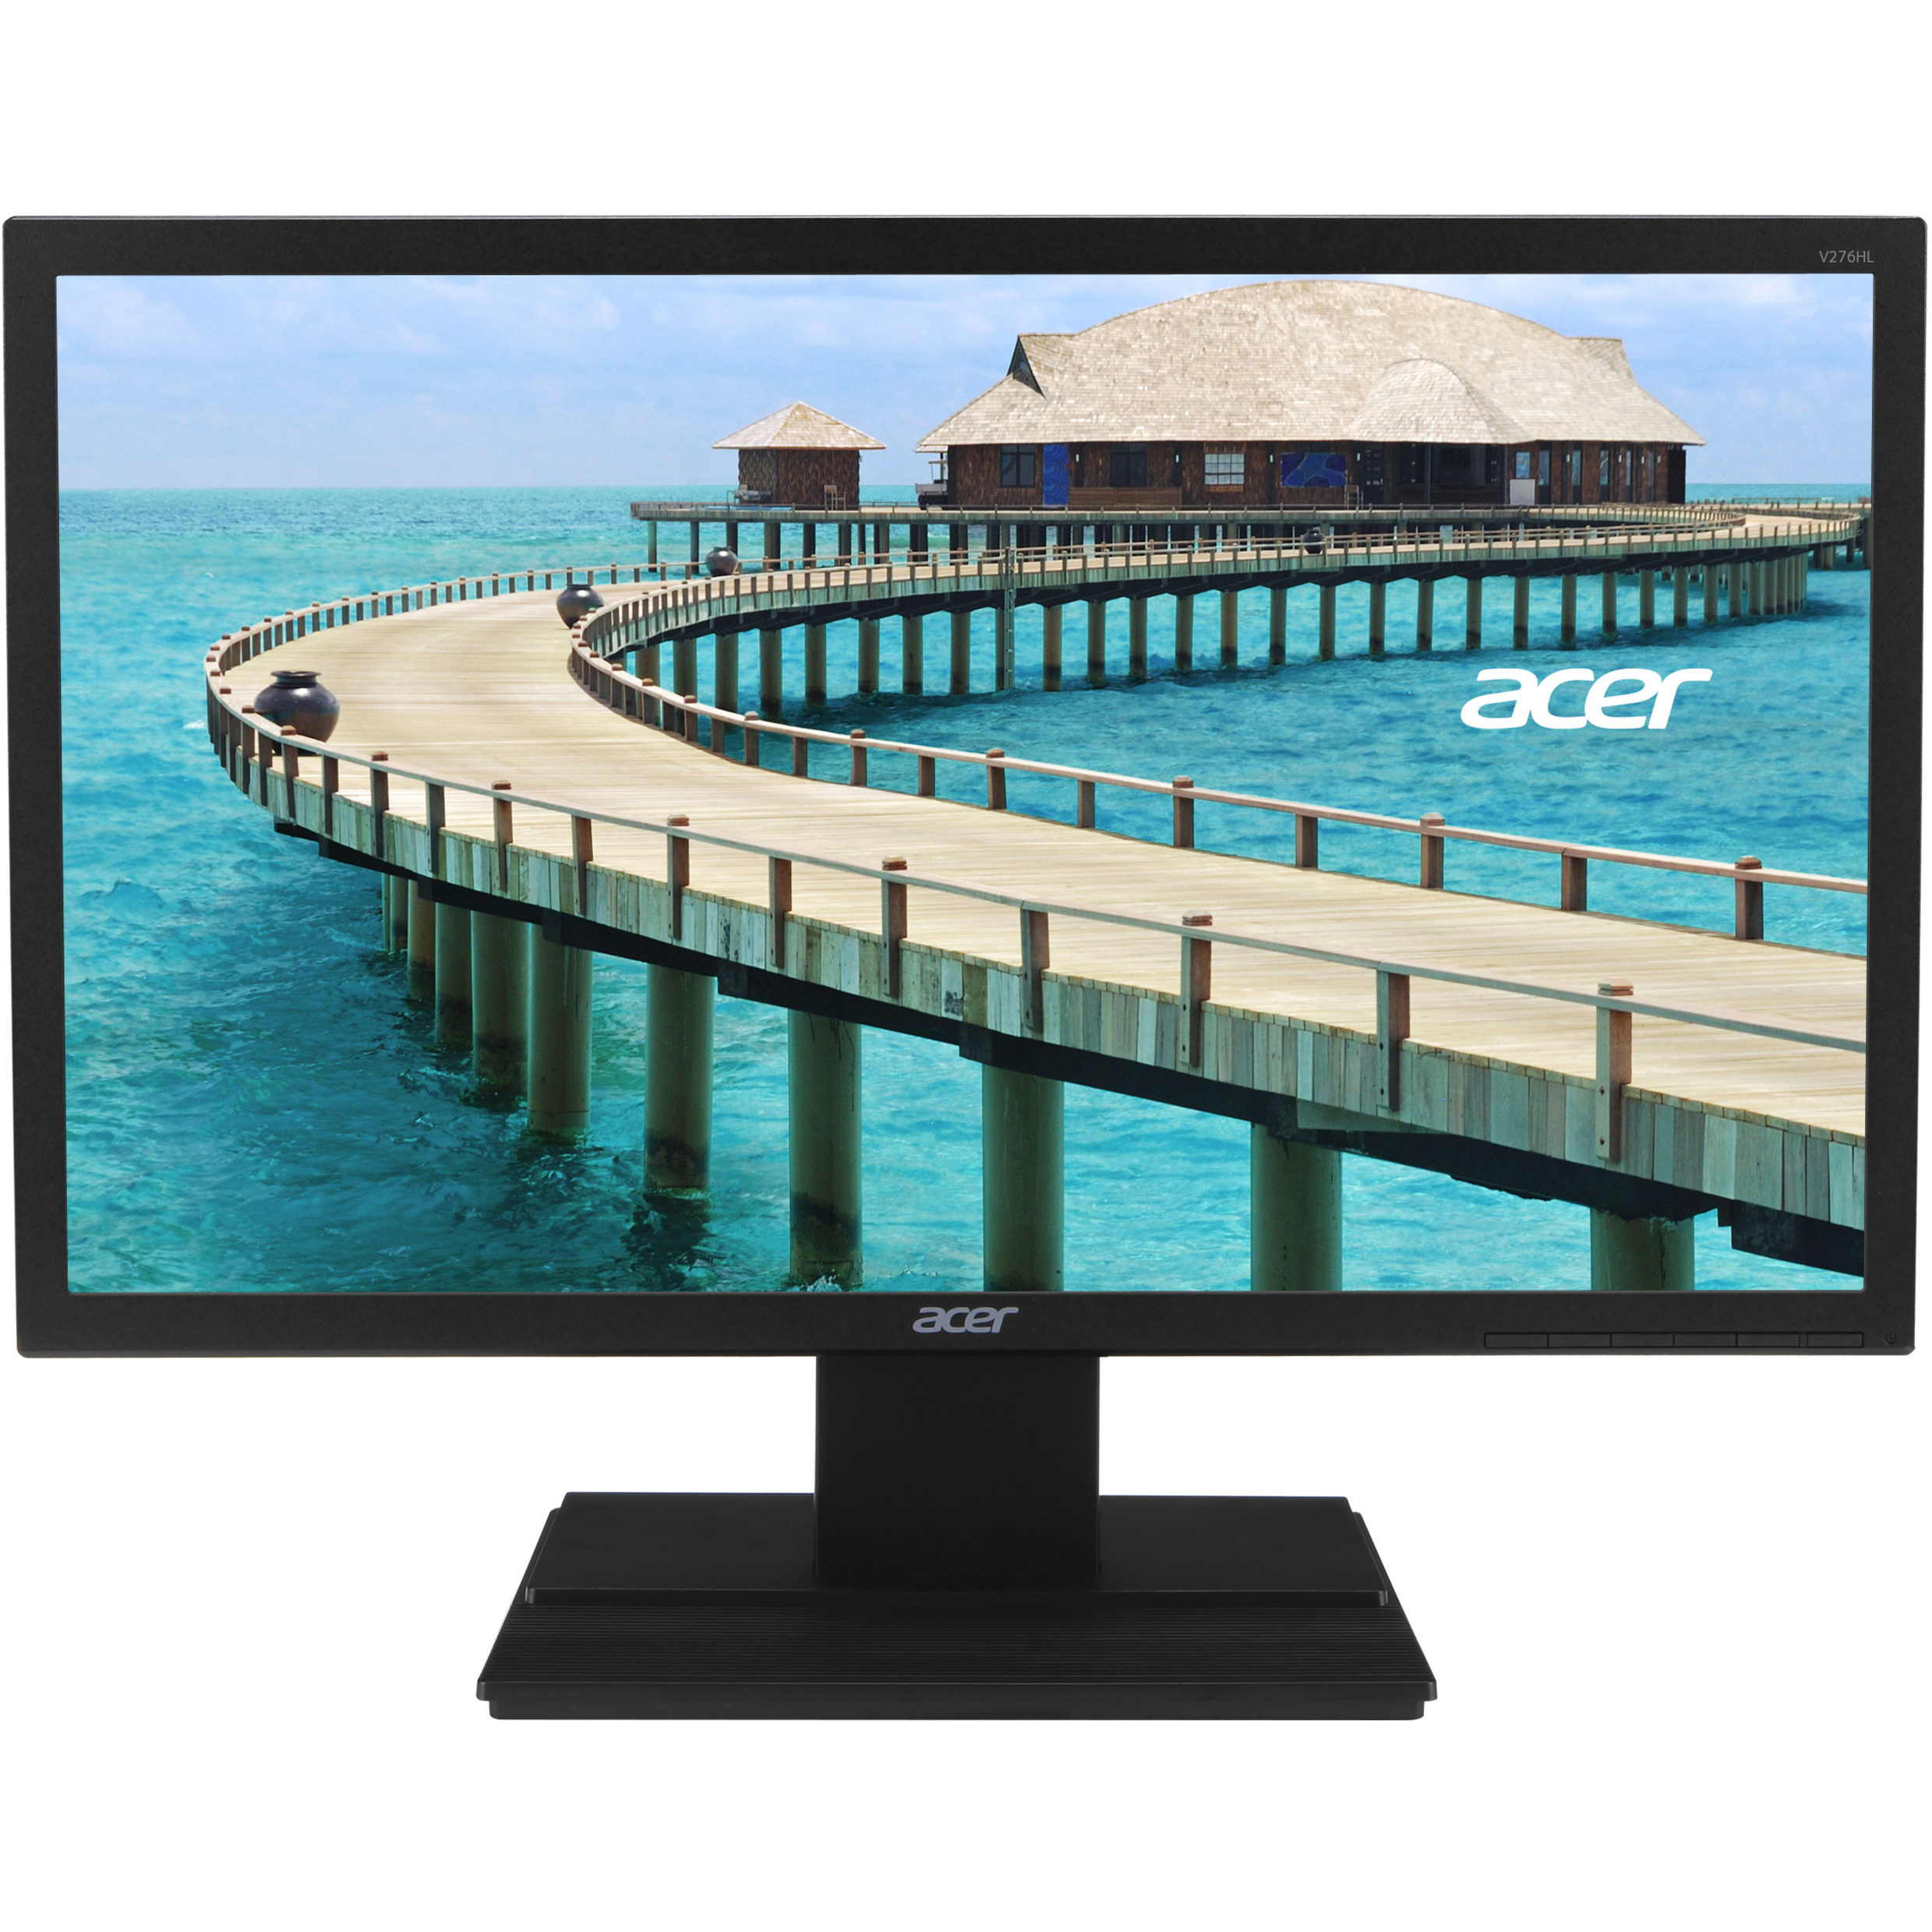 Acer V276HL 27" Class Full HD LCD Monitor, 16:9, Black - image 5 of 5